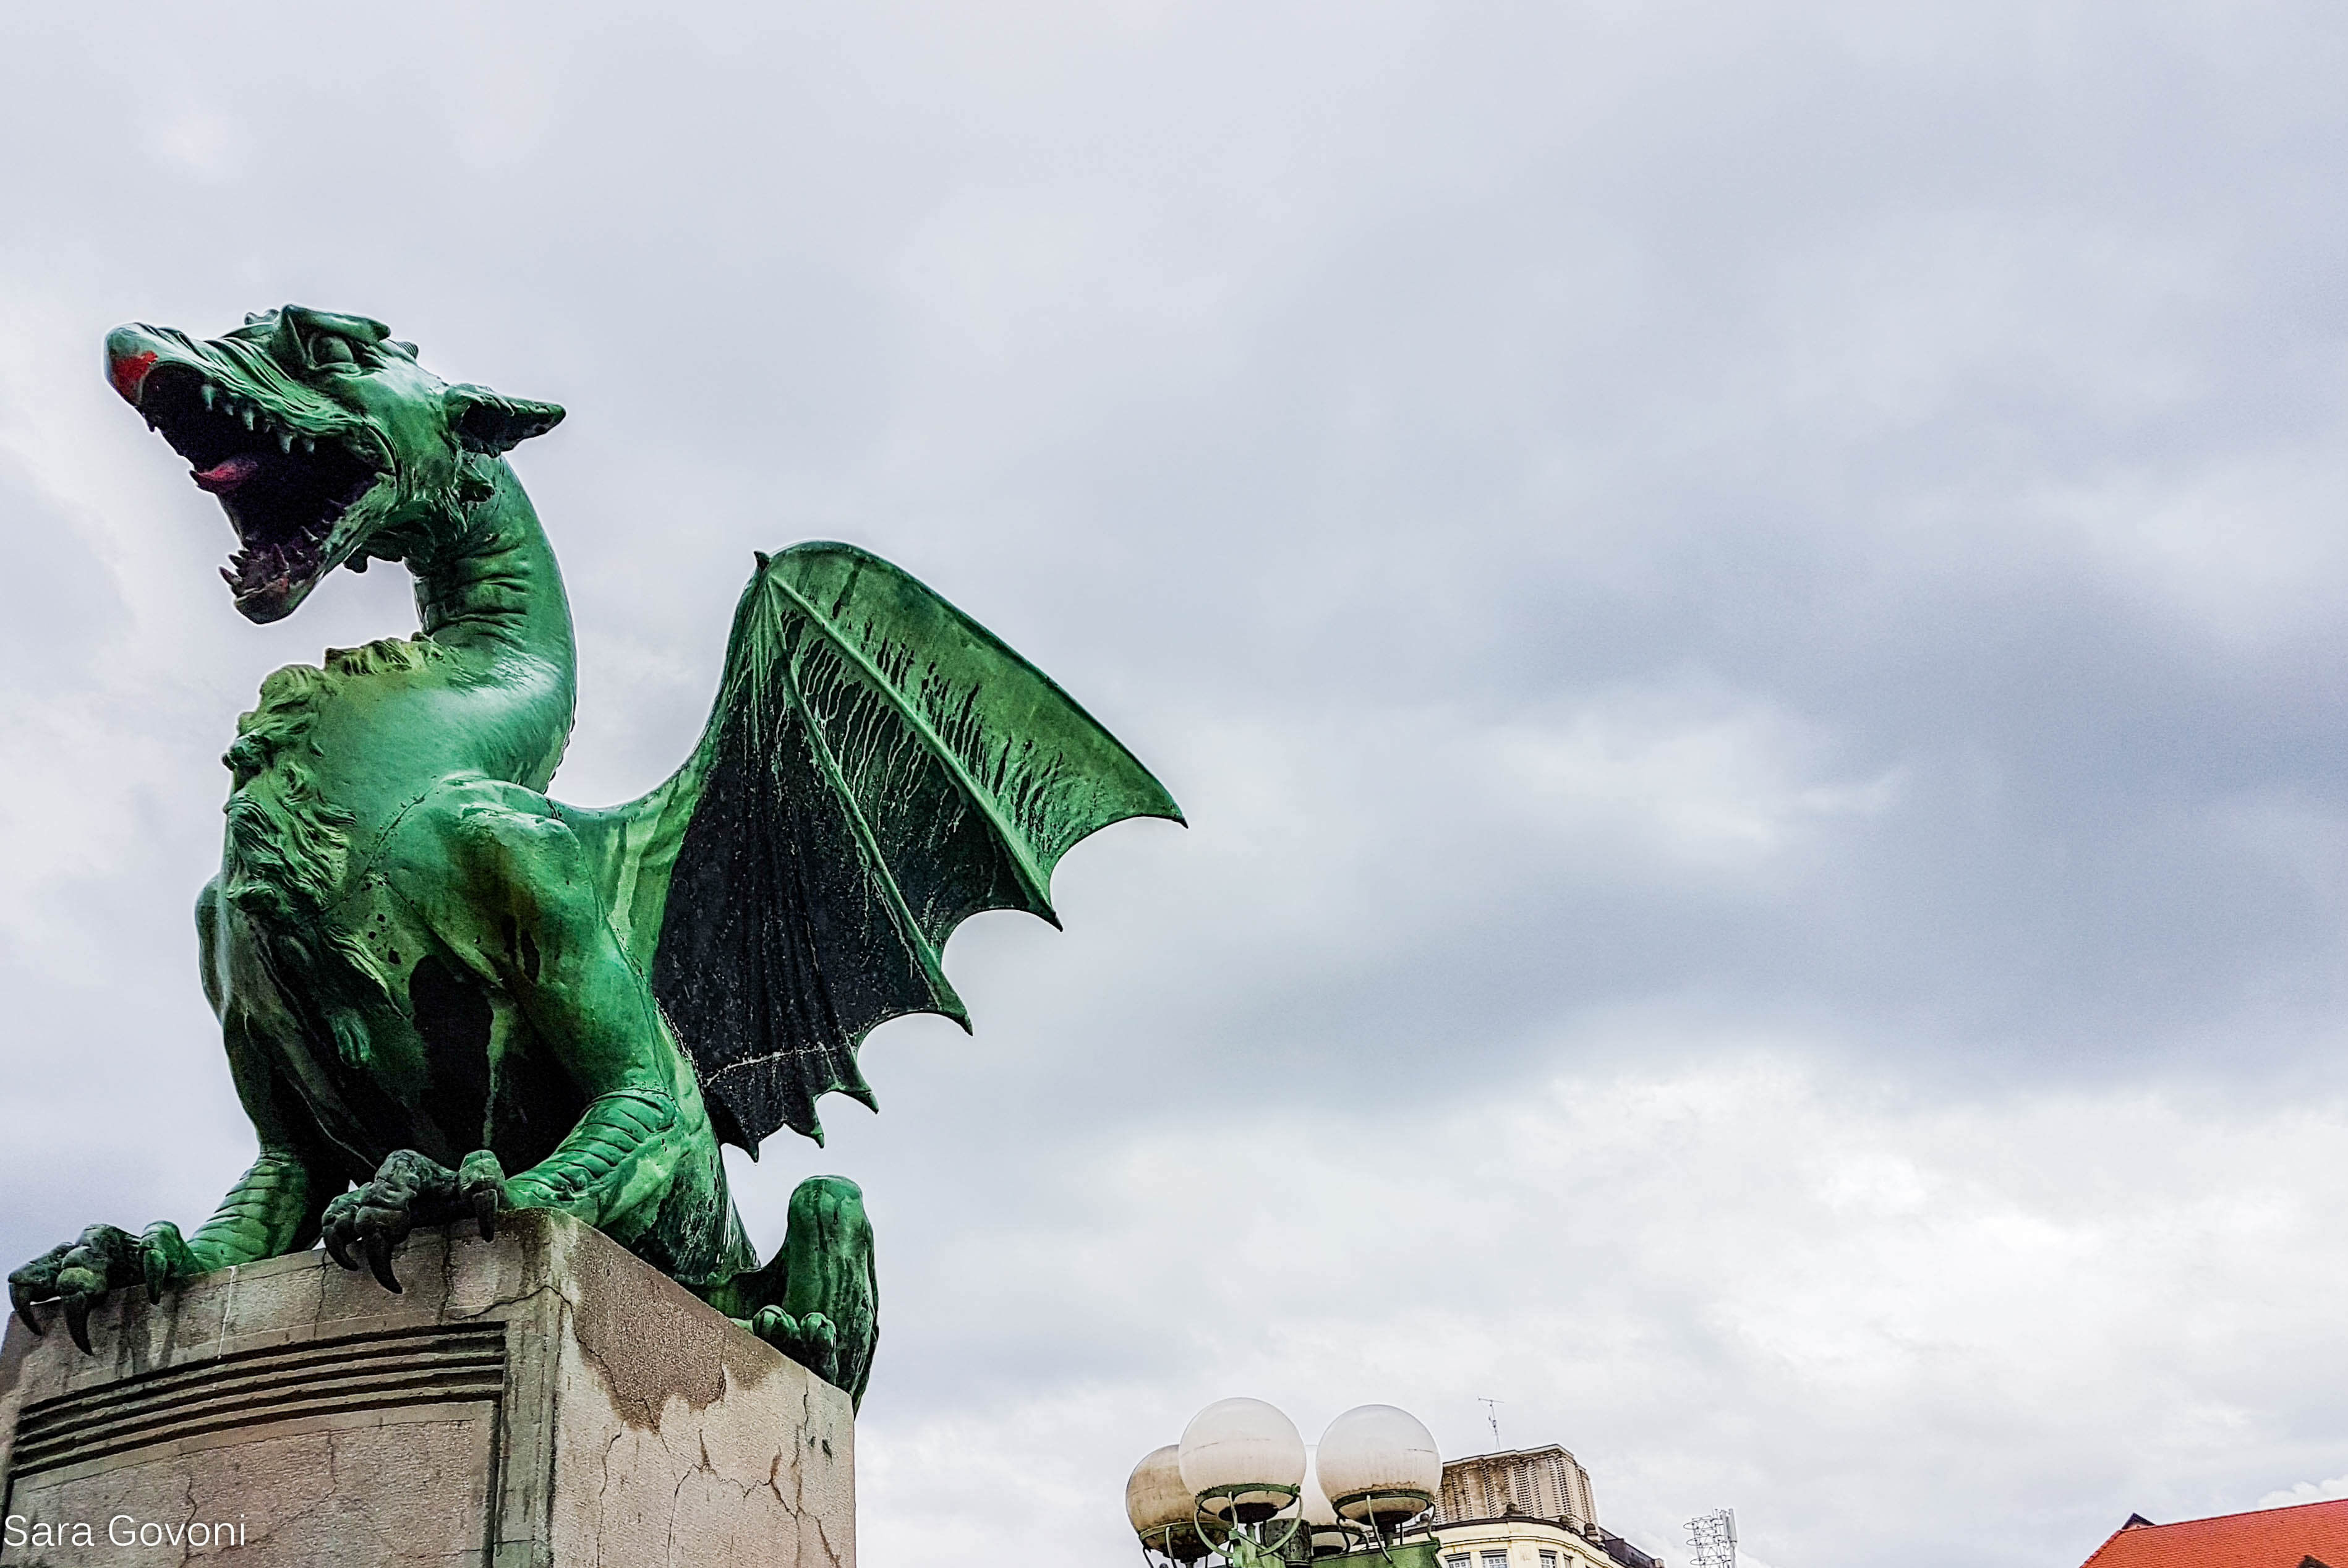 Il Drago verde simbolo di Lubiana con le fauci aperte